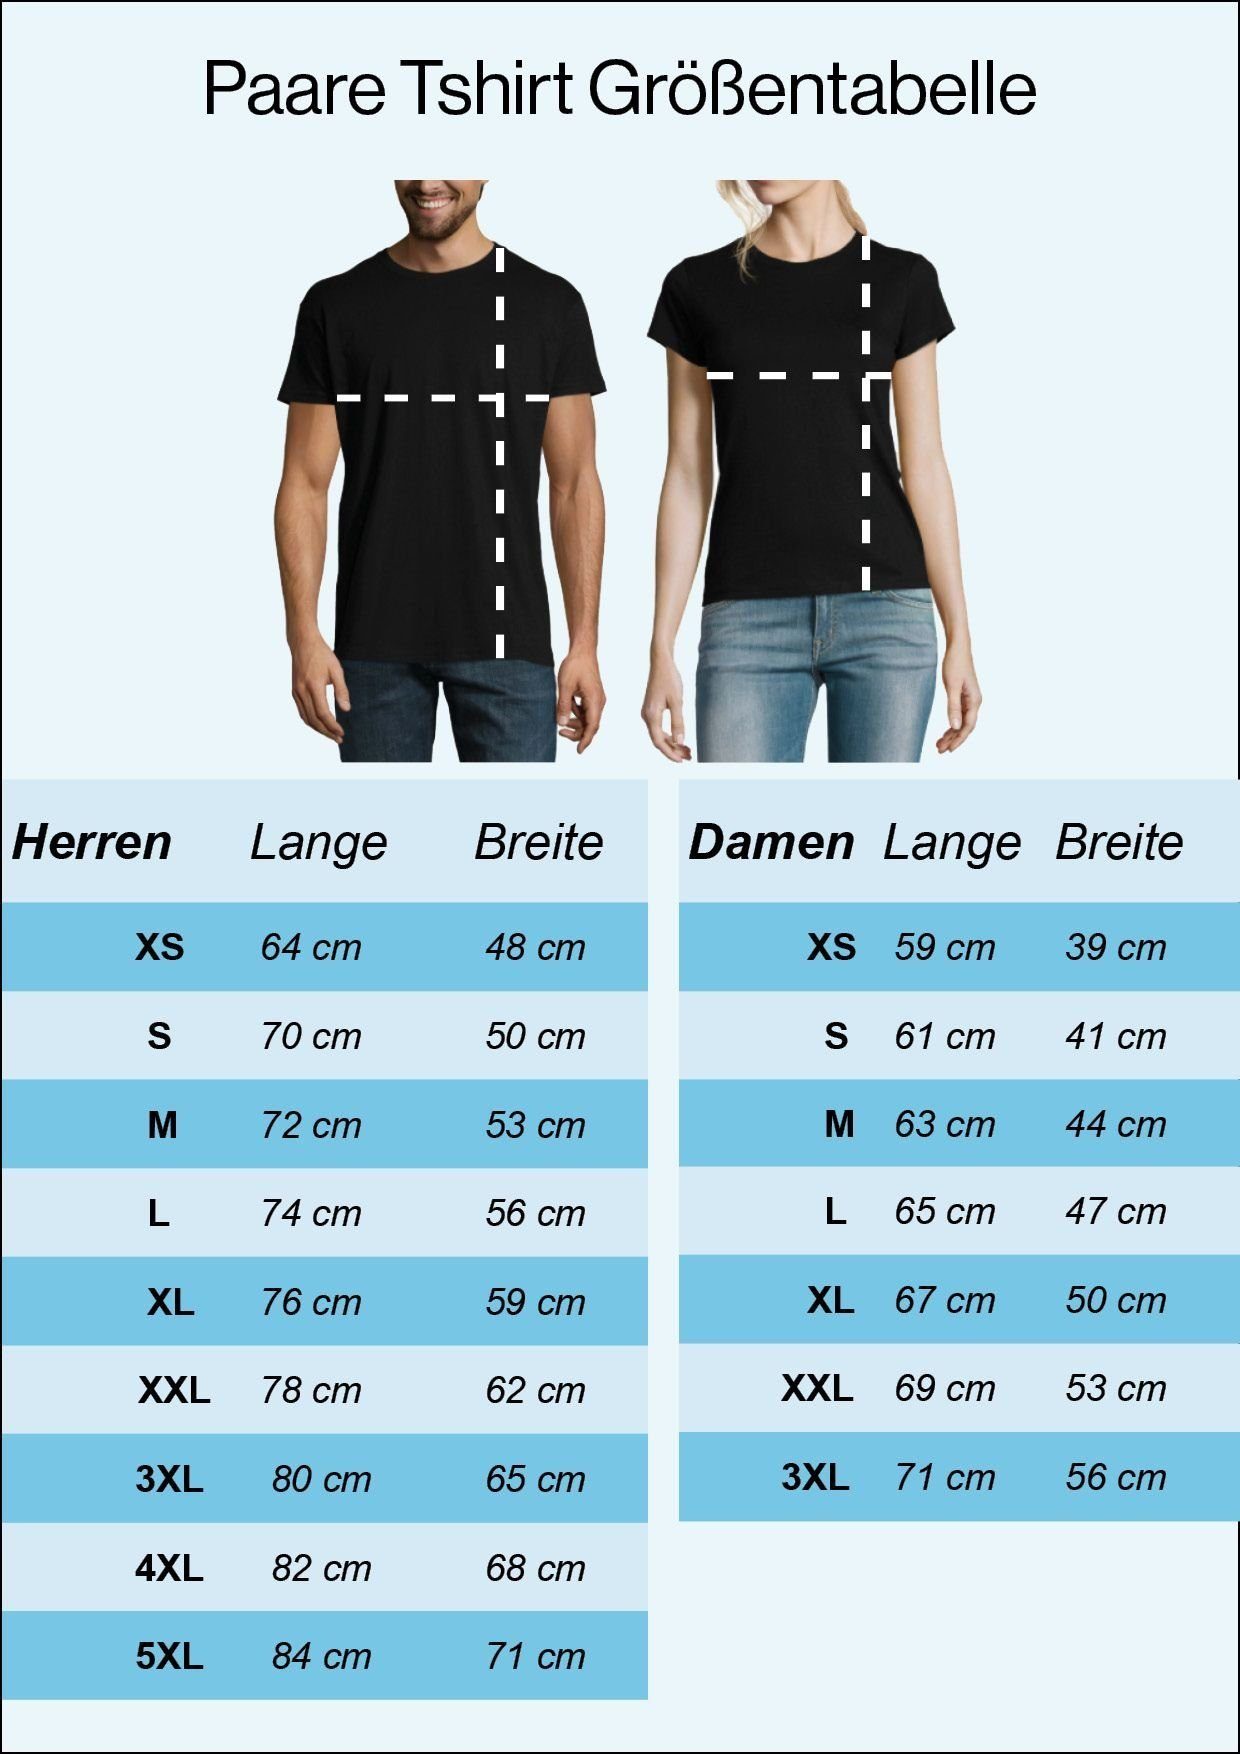 Couples Shop T-Shirt KING / QUEEN modischem Print QUEEN & T-Shirt Paare für mit Schwarz